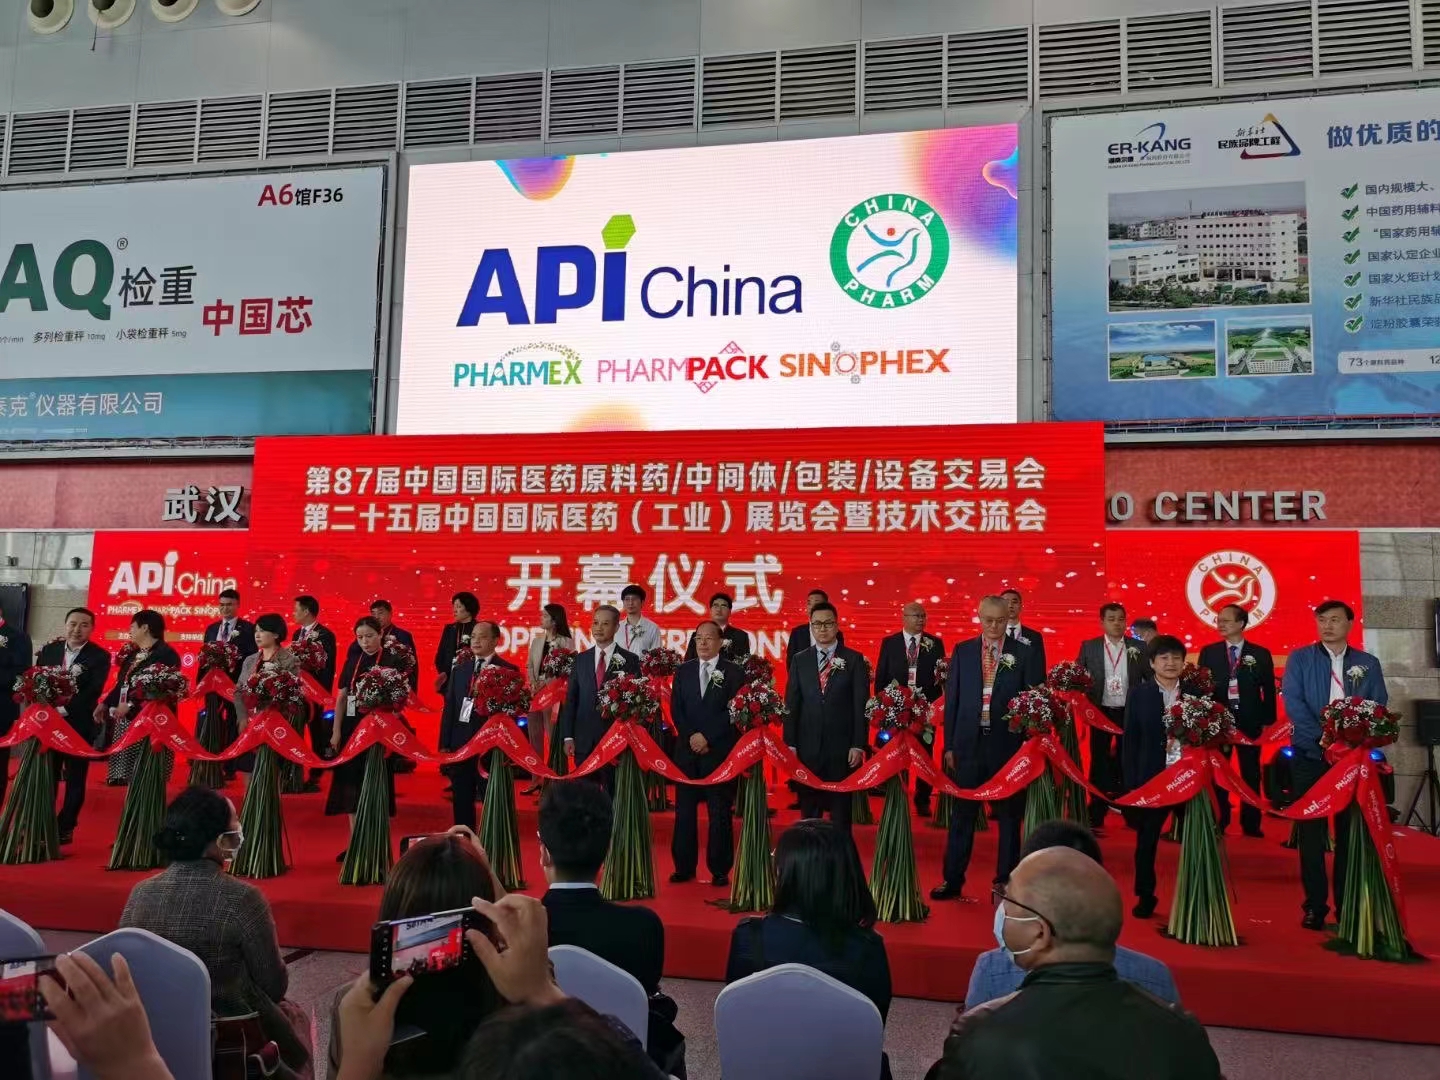 87 ကြိမ်မြောက် China International Pharmaceutical Apis/Intermediates/Packaging/Equipment Fair (API China) -Shanghai Ruifu Chemical Co., Ltd. သည် သုံးစွဲသူများနှင့်အတူ တက်ရောက်မည်ဖြစ်သည်။